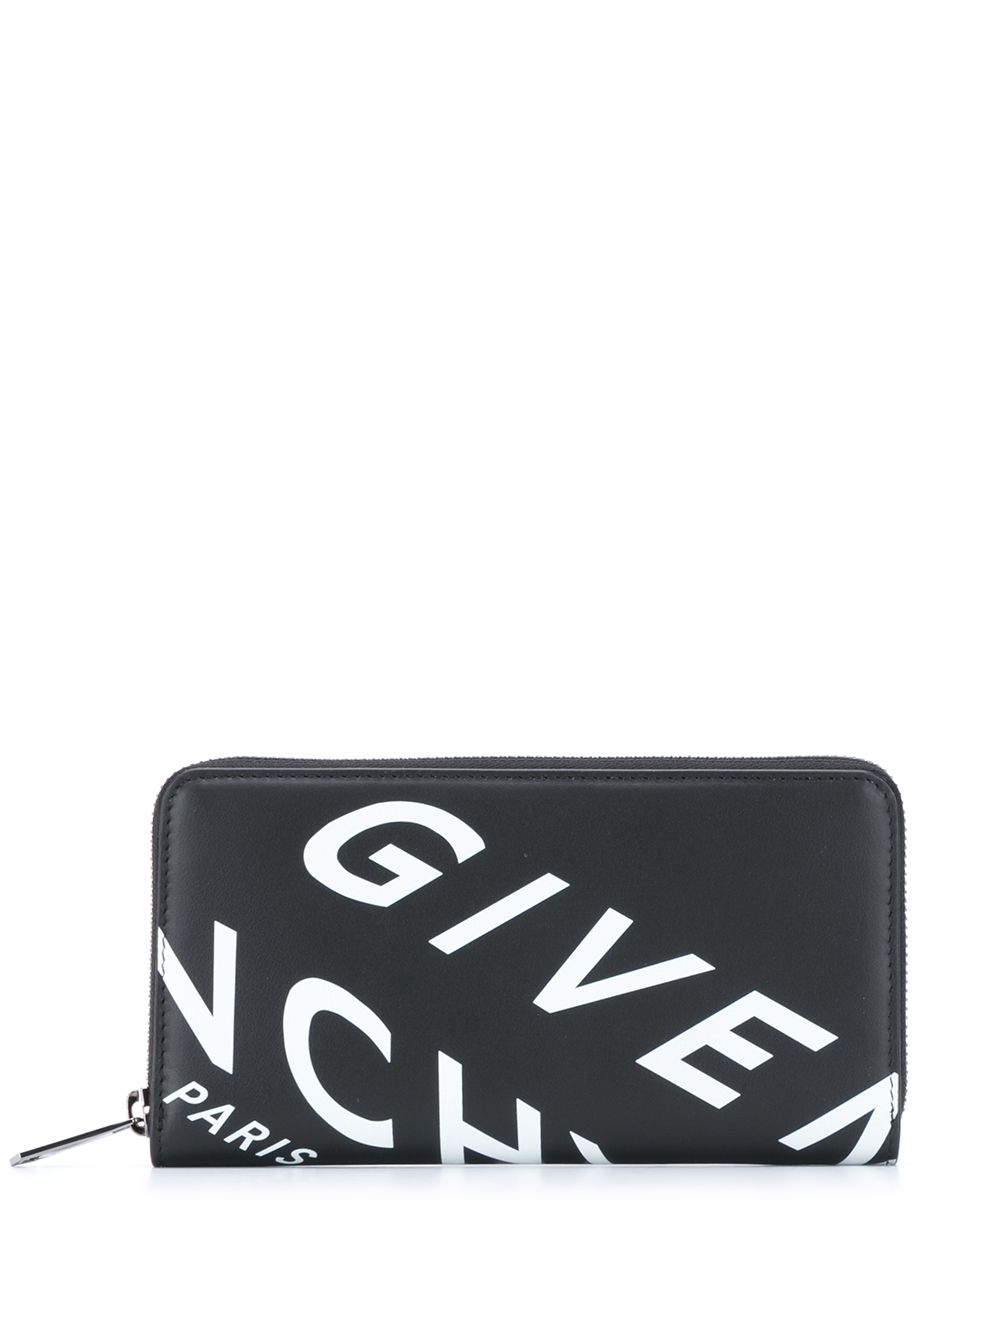 фото Givenchy кошелек с круговой молнией и логотипом